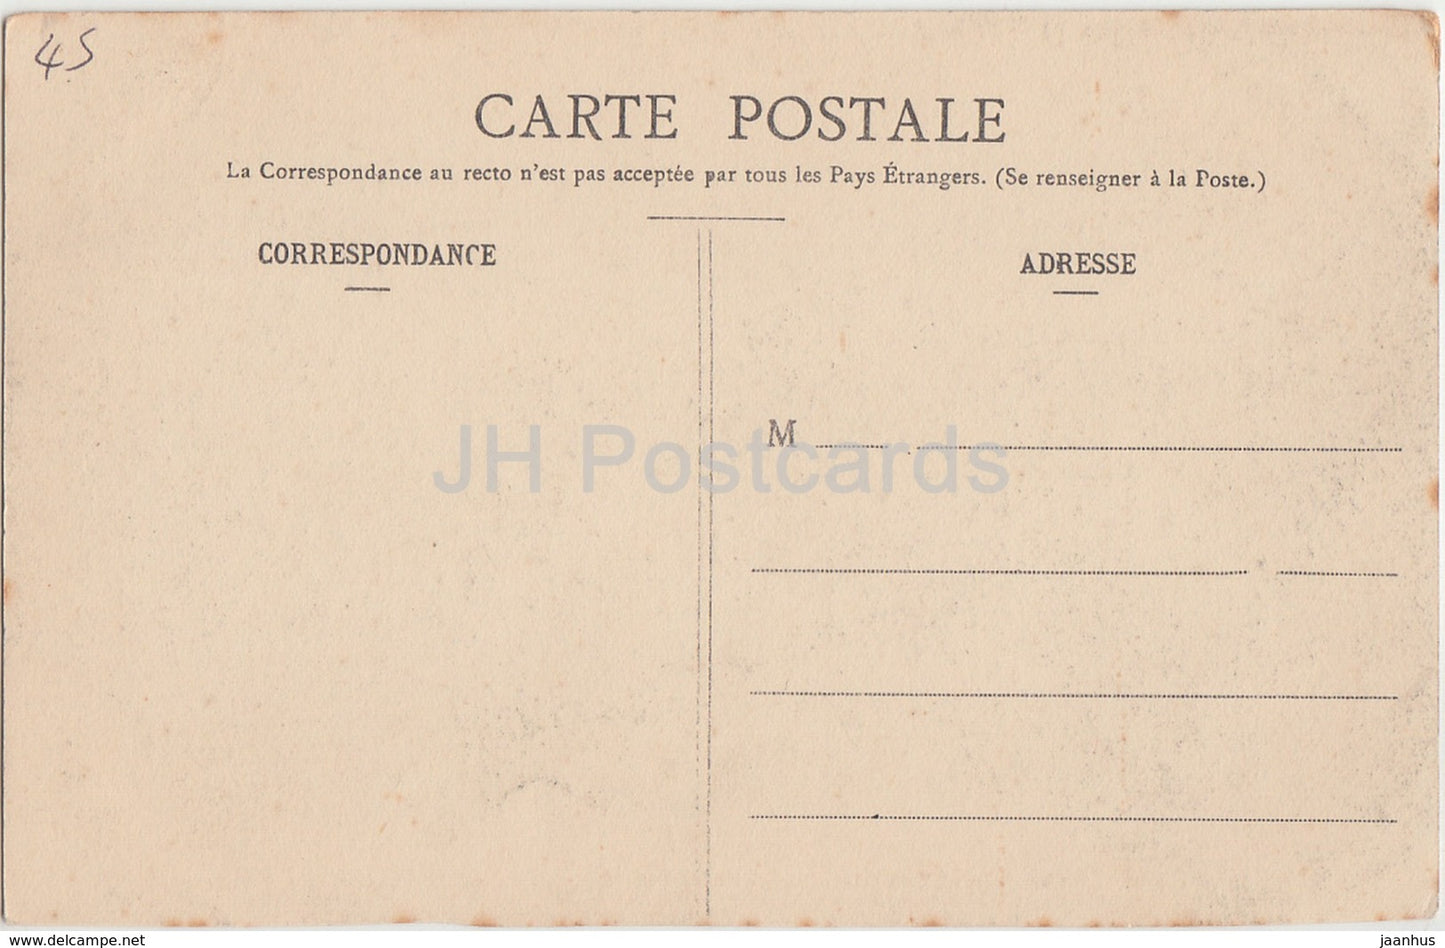 Solterre - Château de Labussière - Maison du Conservateur - Ecluses - château - 7 - carte postale ancienne - France - inutilisée